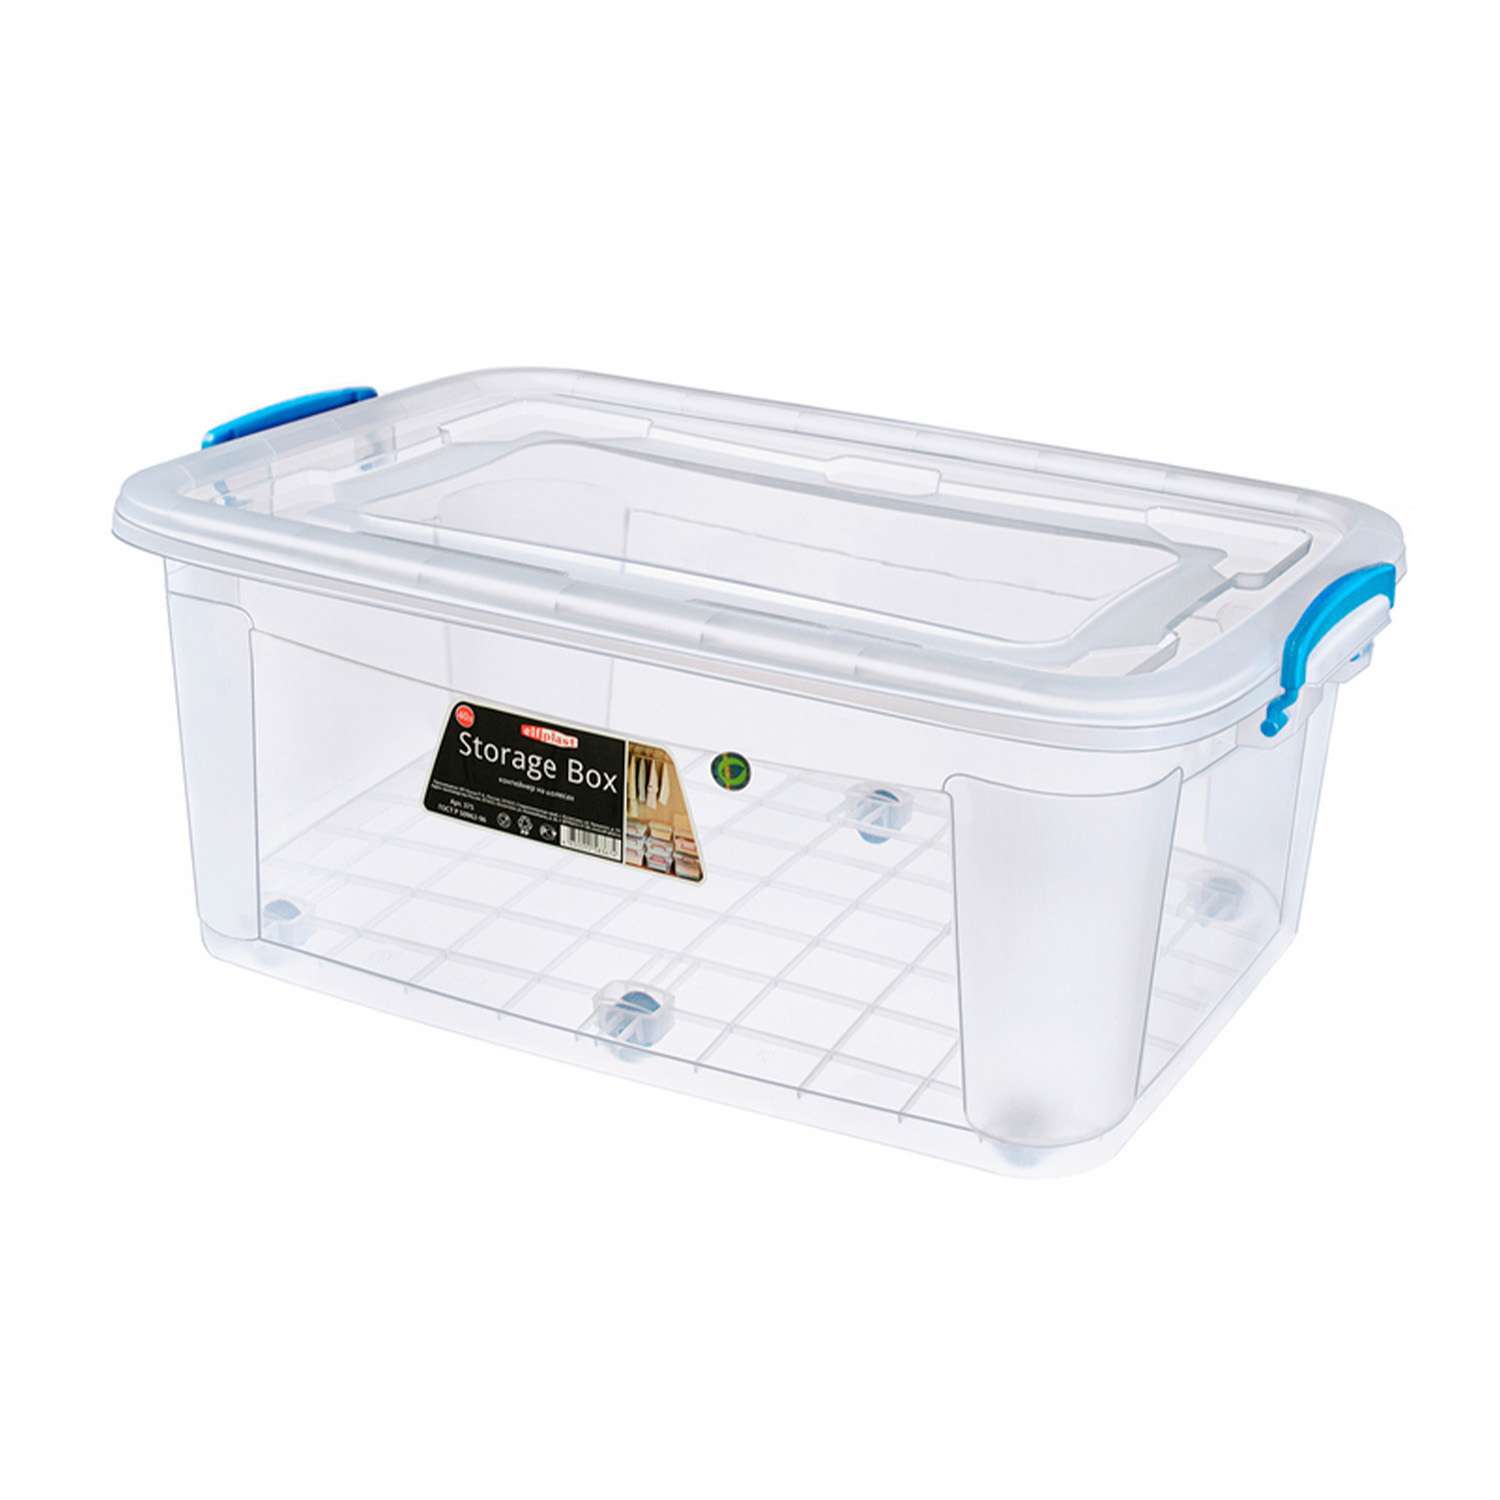 Контейнер elfplast для хранения Storage Box на колесах прозрачный 40 л 64х41.5х25 см - фото 9